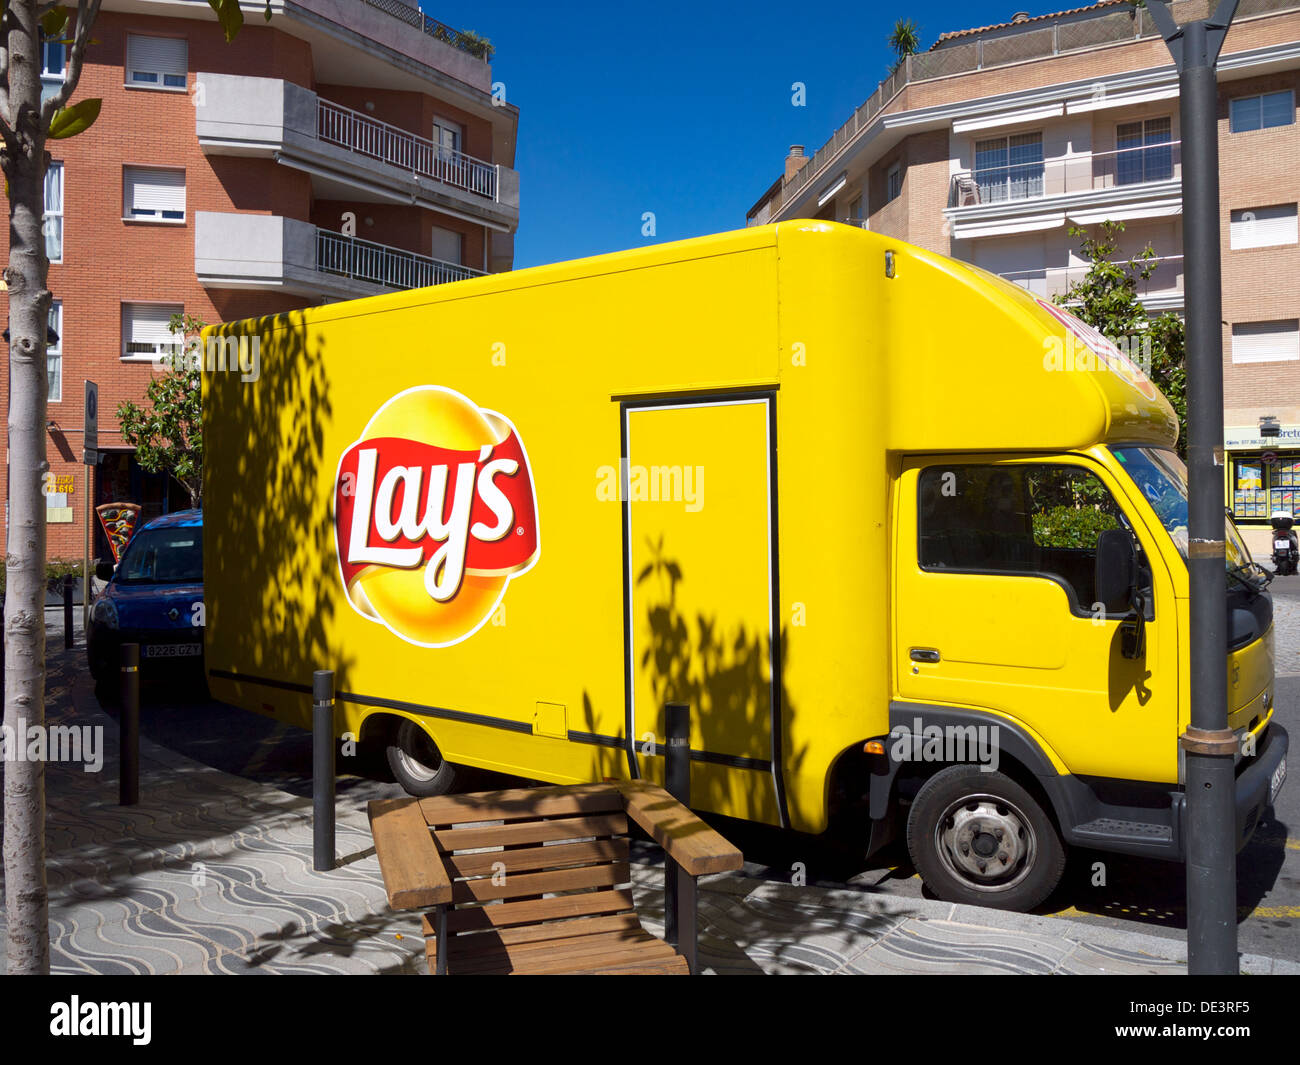 Legt Lieferwagen in einem spanischen Dorf Straße abgestellt Stockfoto